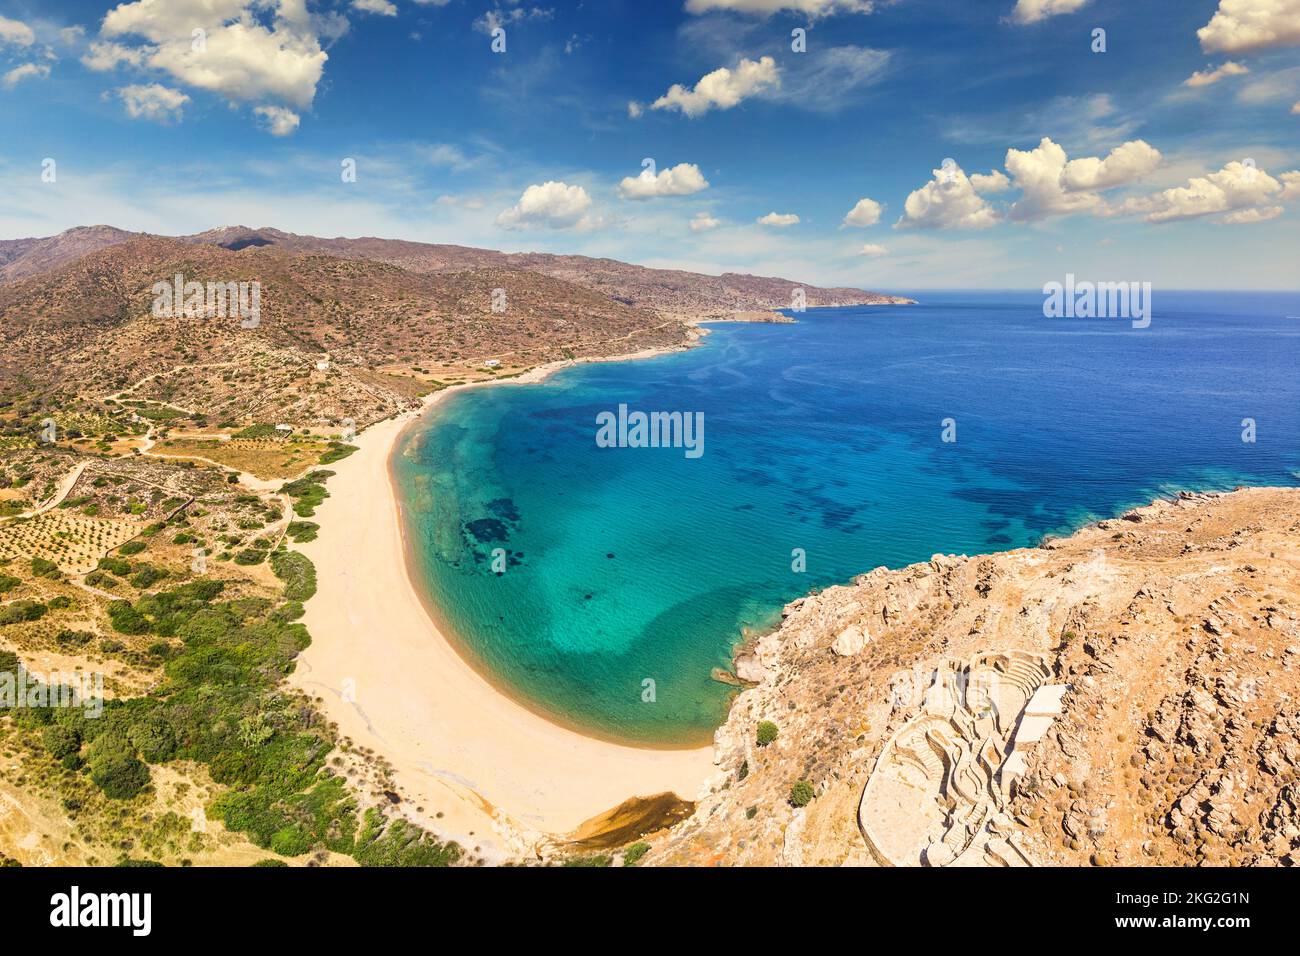 The sandy beach Kalamos in Ios island, Greece Stock Photo